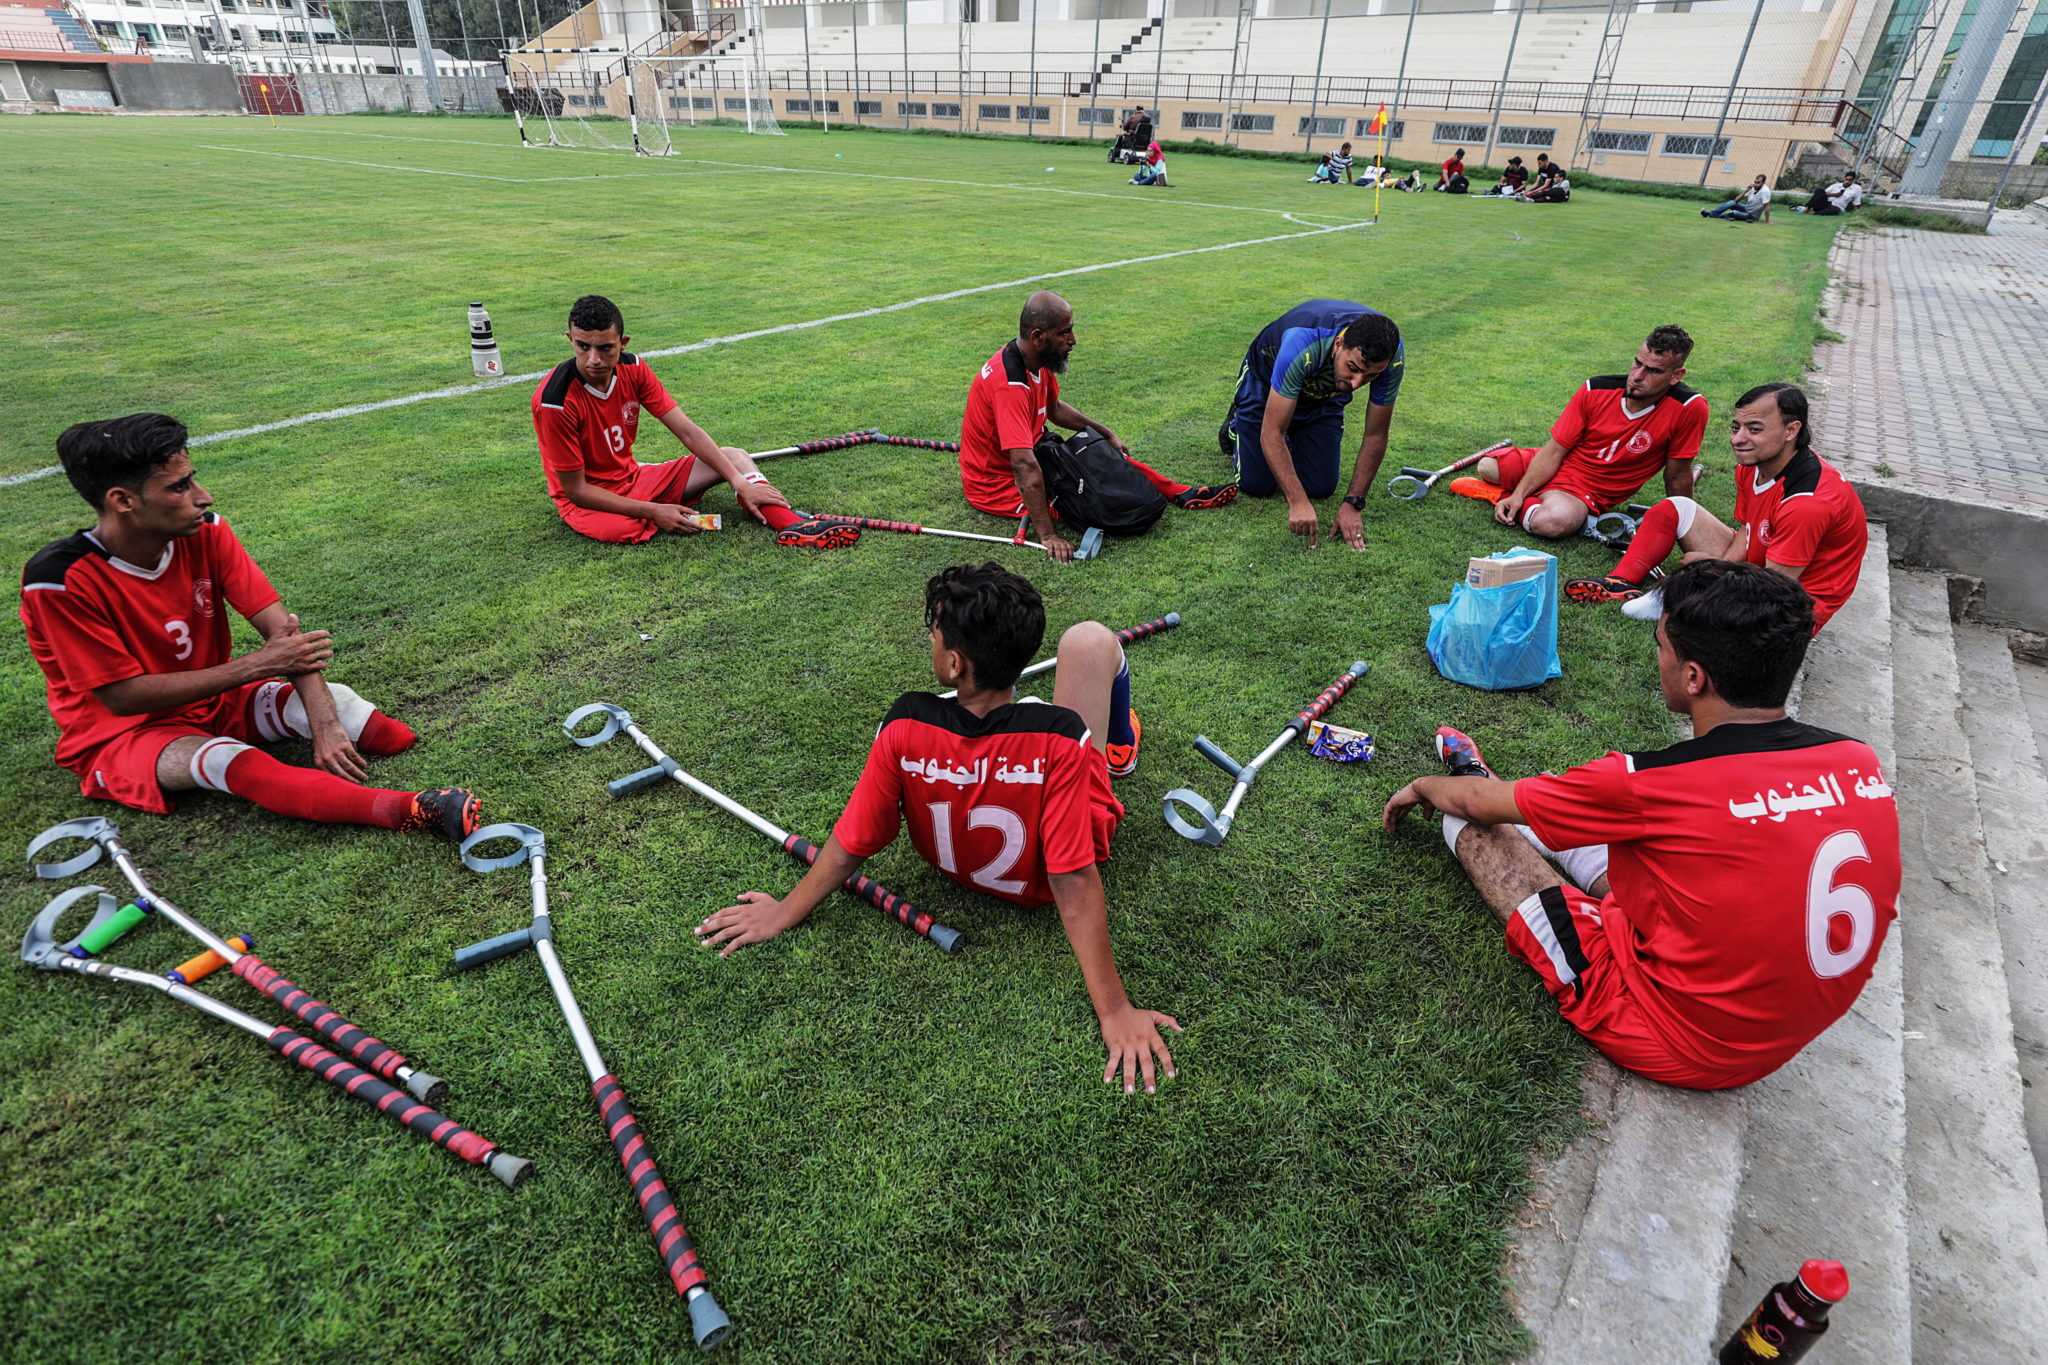 Strefa Gazy: palestyńscy piłkarze, którzy są po amputacji biorą udział w meczu ligowym, fot. MOHAMMED SABER, PAP/EPA.